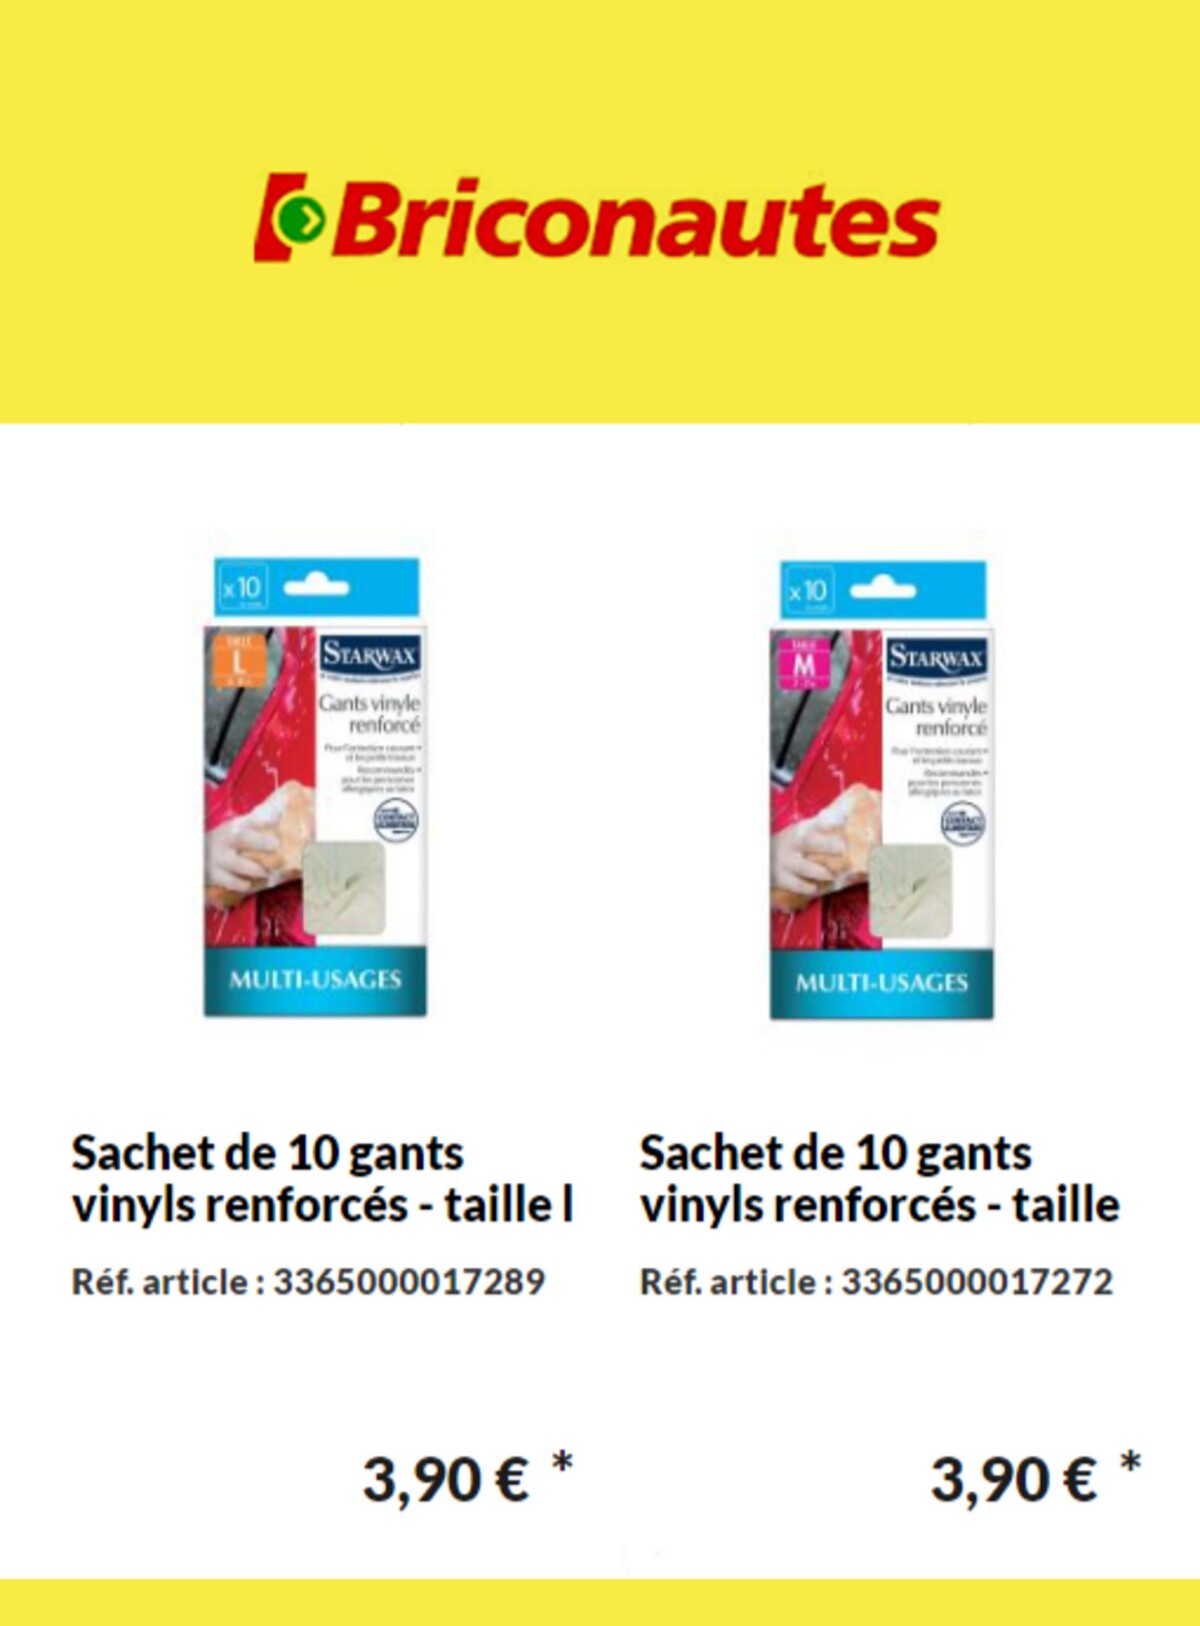 Catalogue Nouveaux produits Les Briconautes, page 00005